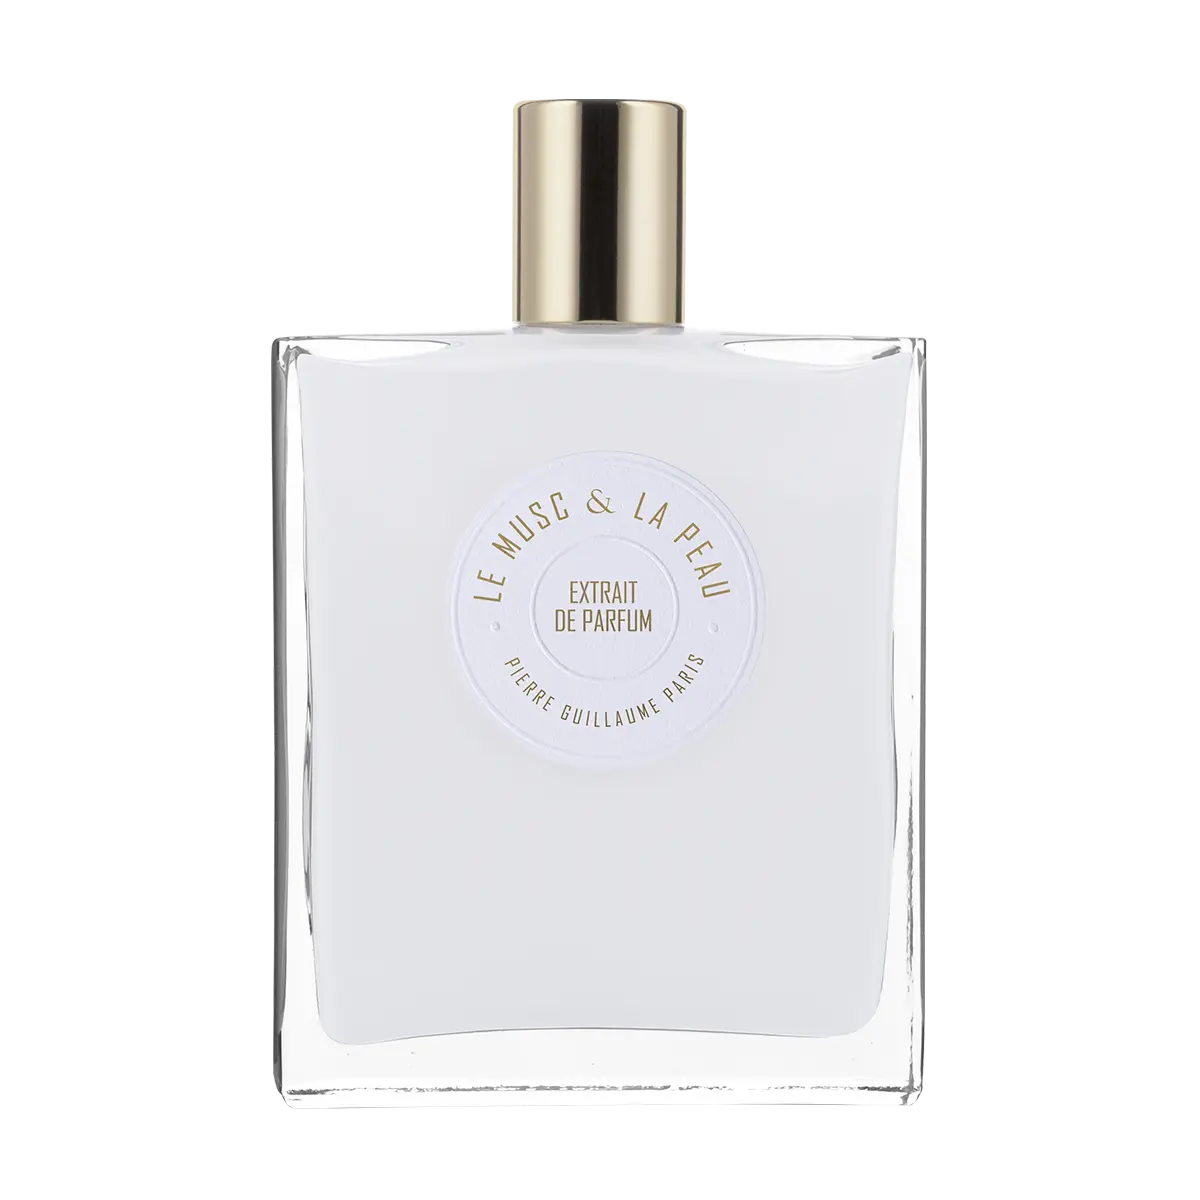 Pierre Guillaume Le Musc &amp; La Peau Extraits de Parfum